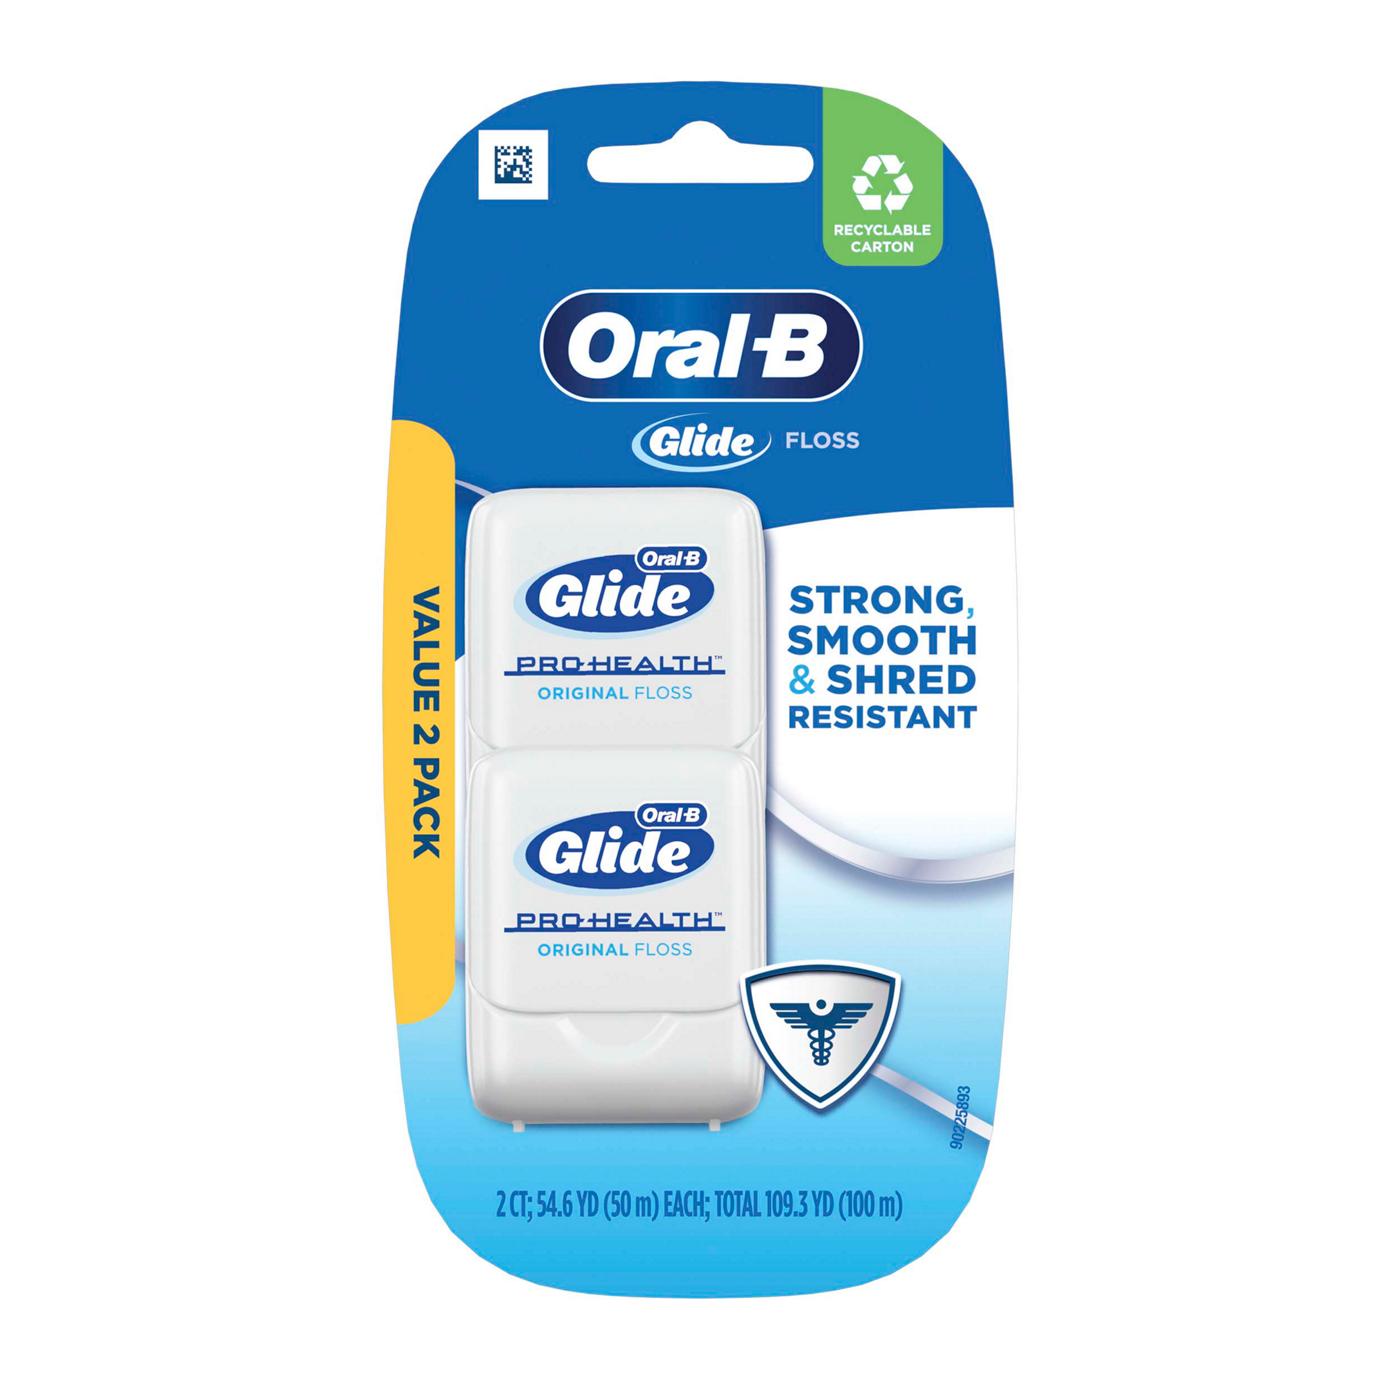 Oral-B Glide Pro-Health Original Dental Floss Value Pack; image 1 of 9